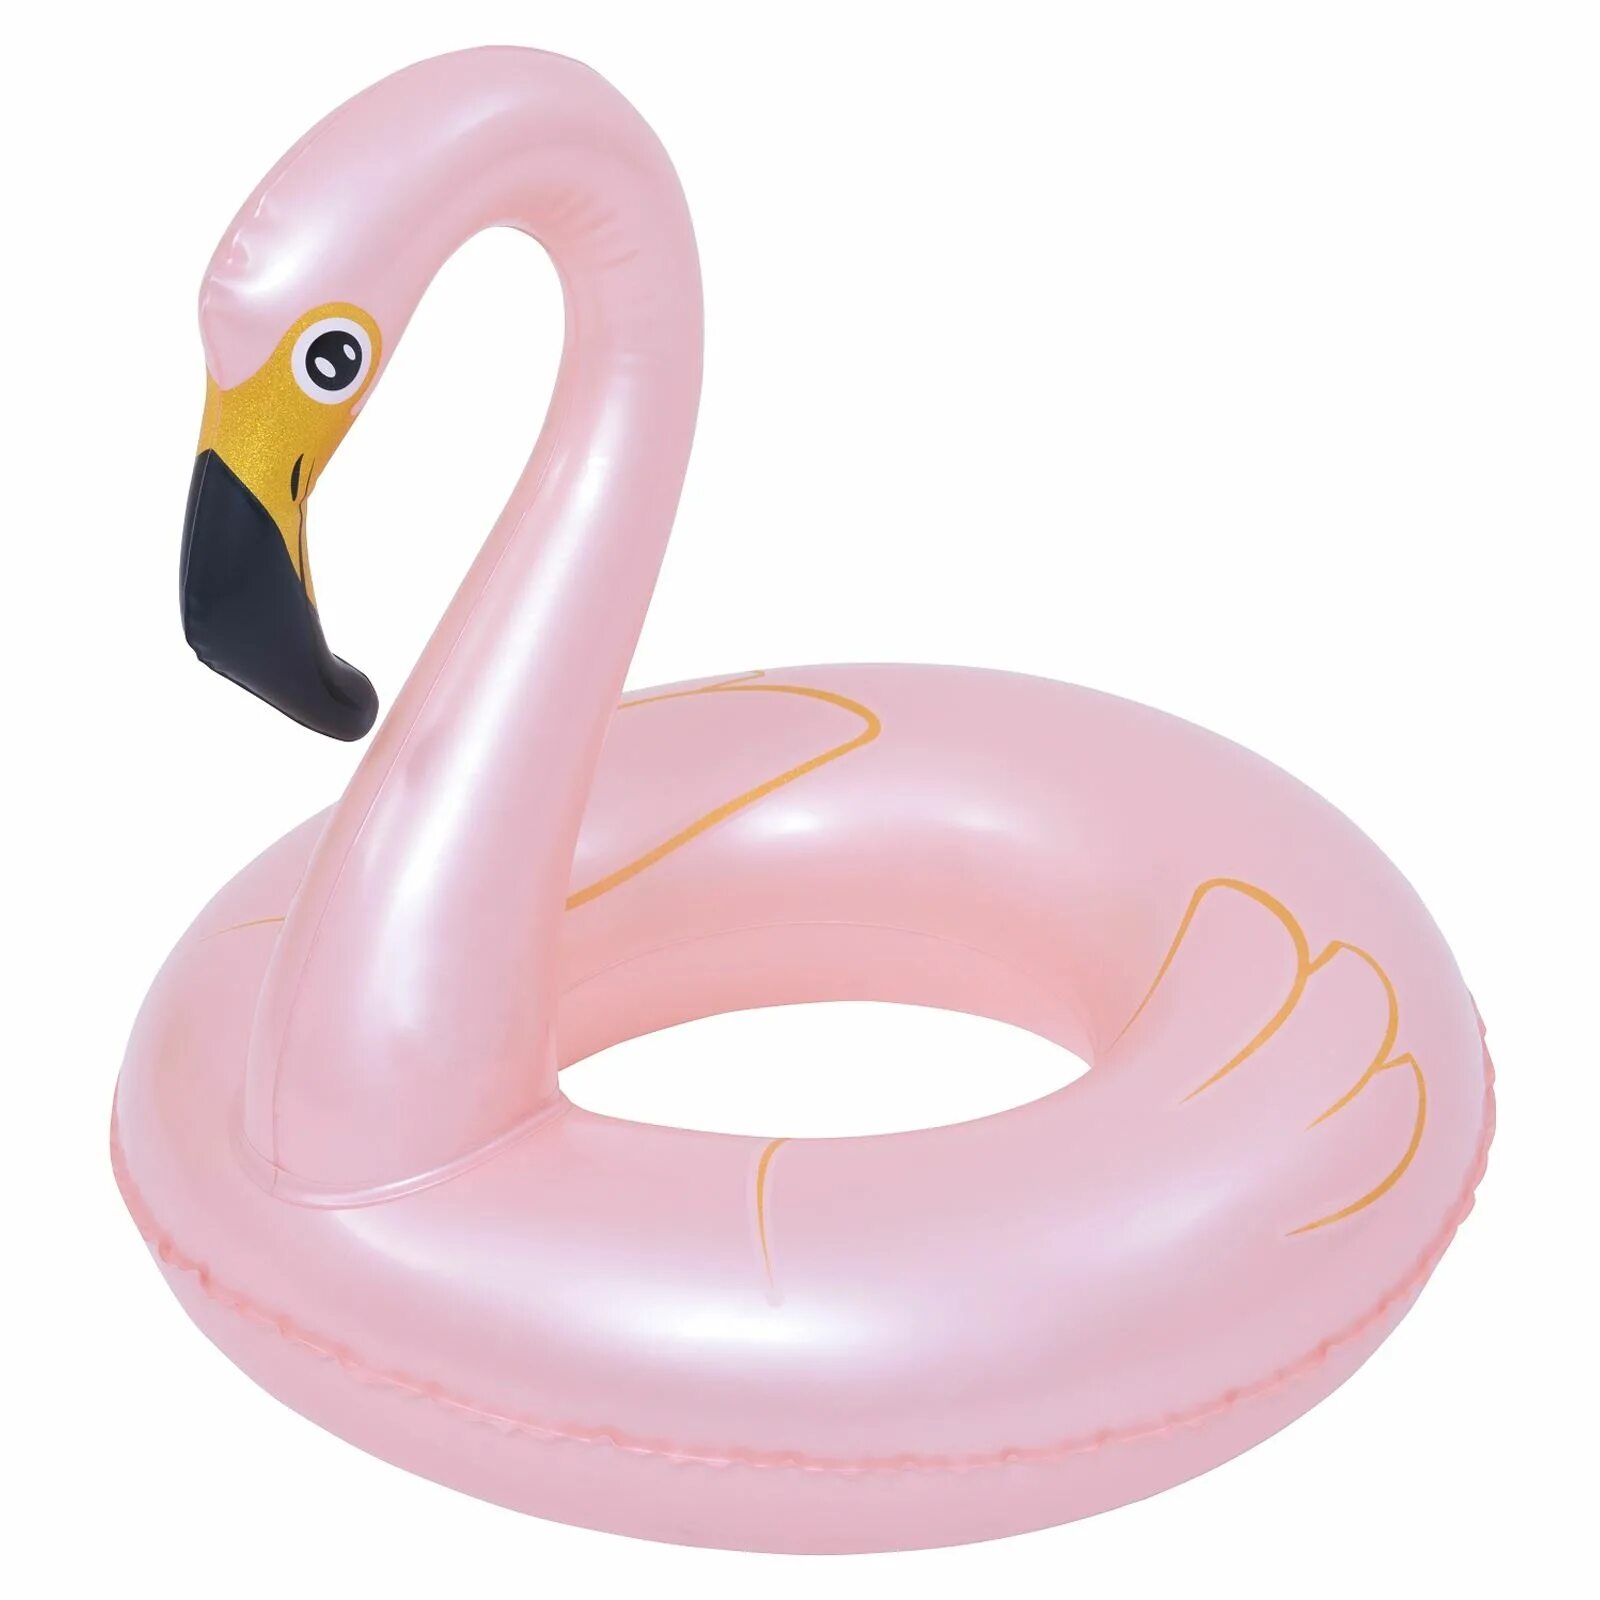 Фламинго для плавания. Надувной круг Фламинго. Надувной круг Фламинго 120 см. Flamingo надувной круг Inflatable swimming. Круг надувной Фламинго 55см 141-128р.